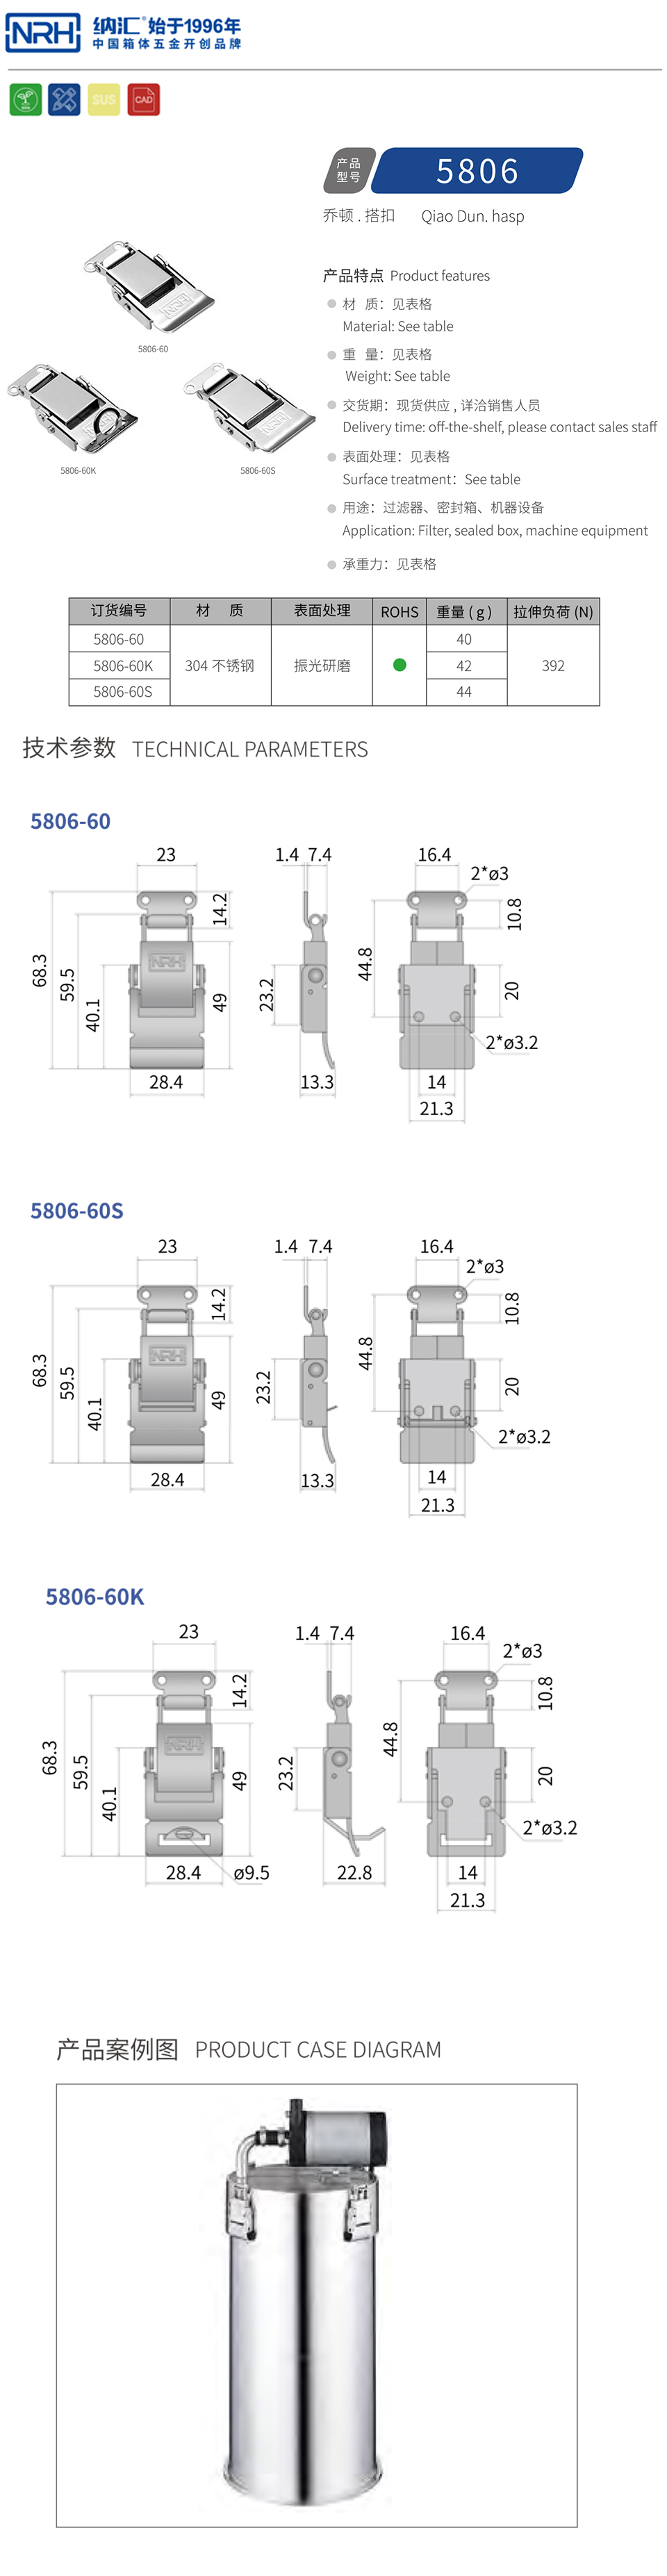 密封箱机械设备锁扣方型搭扣5806-60K-S04-ZG